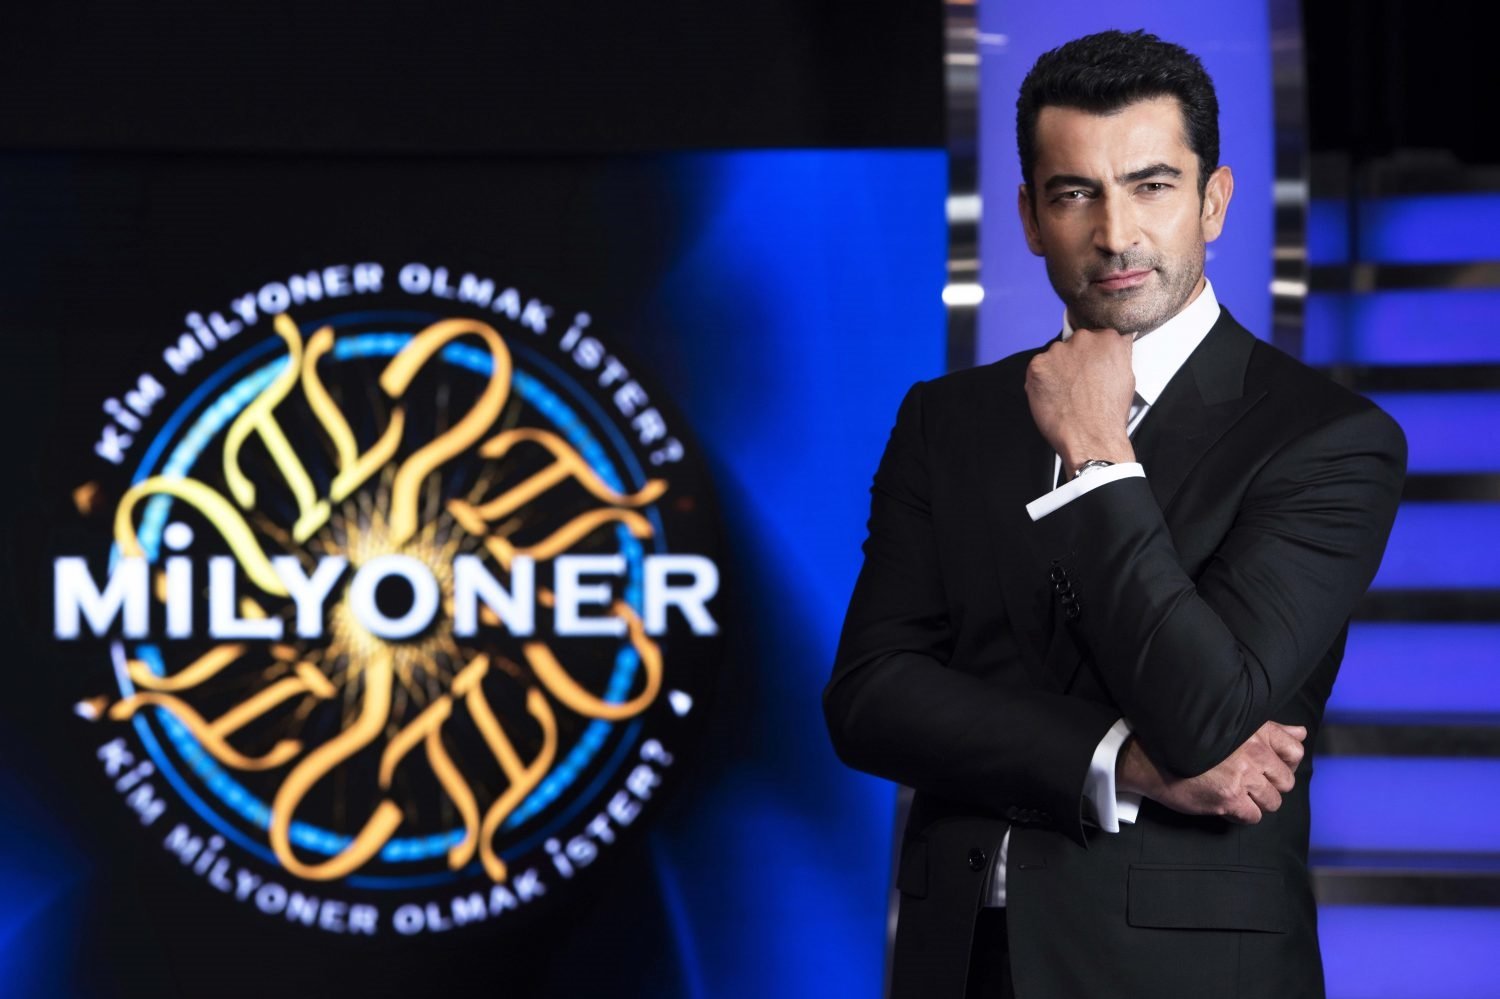 Kim Milyoner Olmak İster 1 milyonluk soru ve Kenan İmirzalıoğlu ile bu akşam ATV'de!